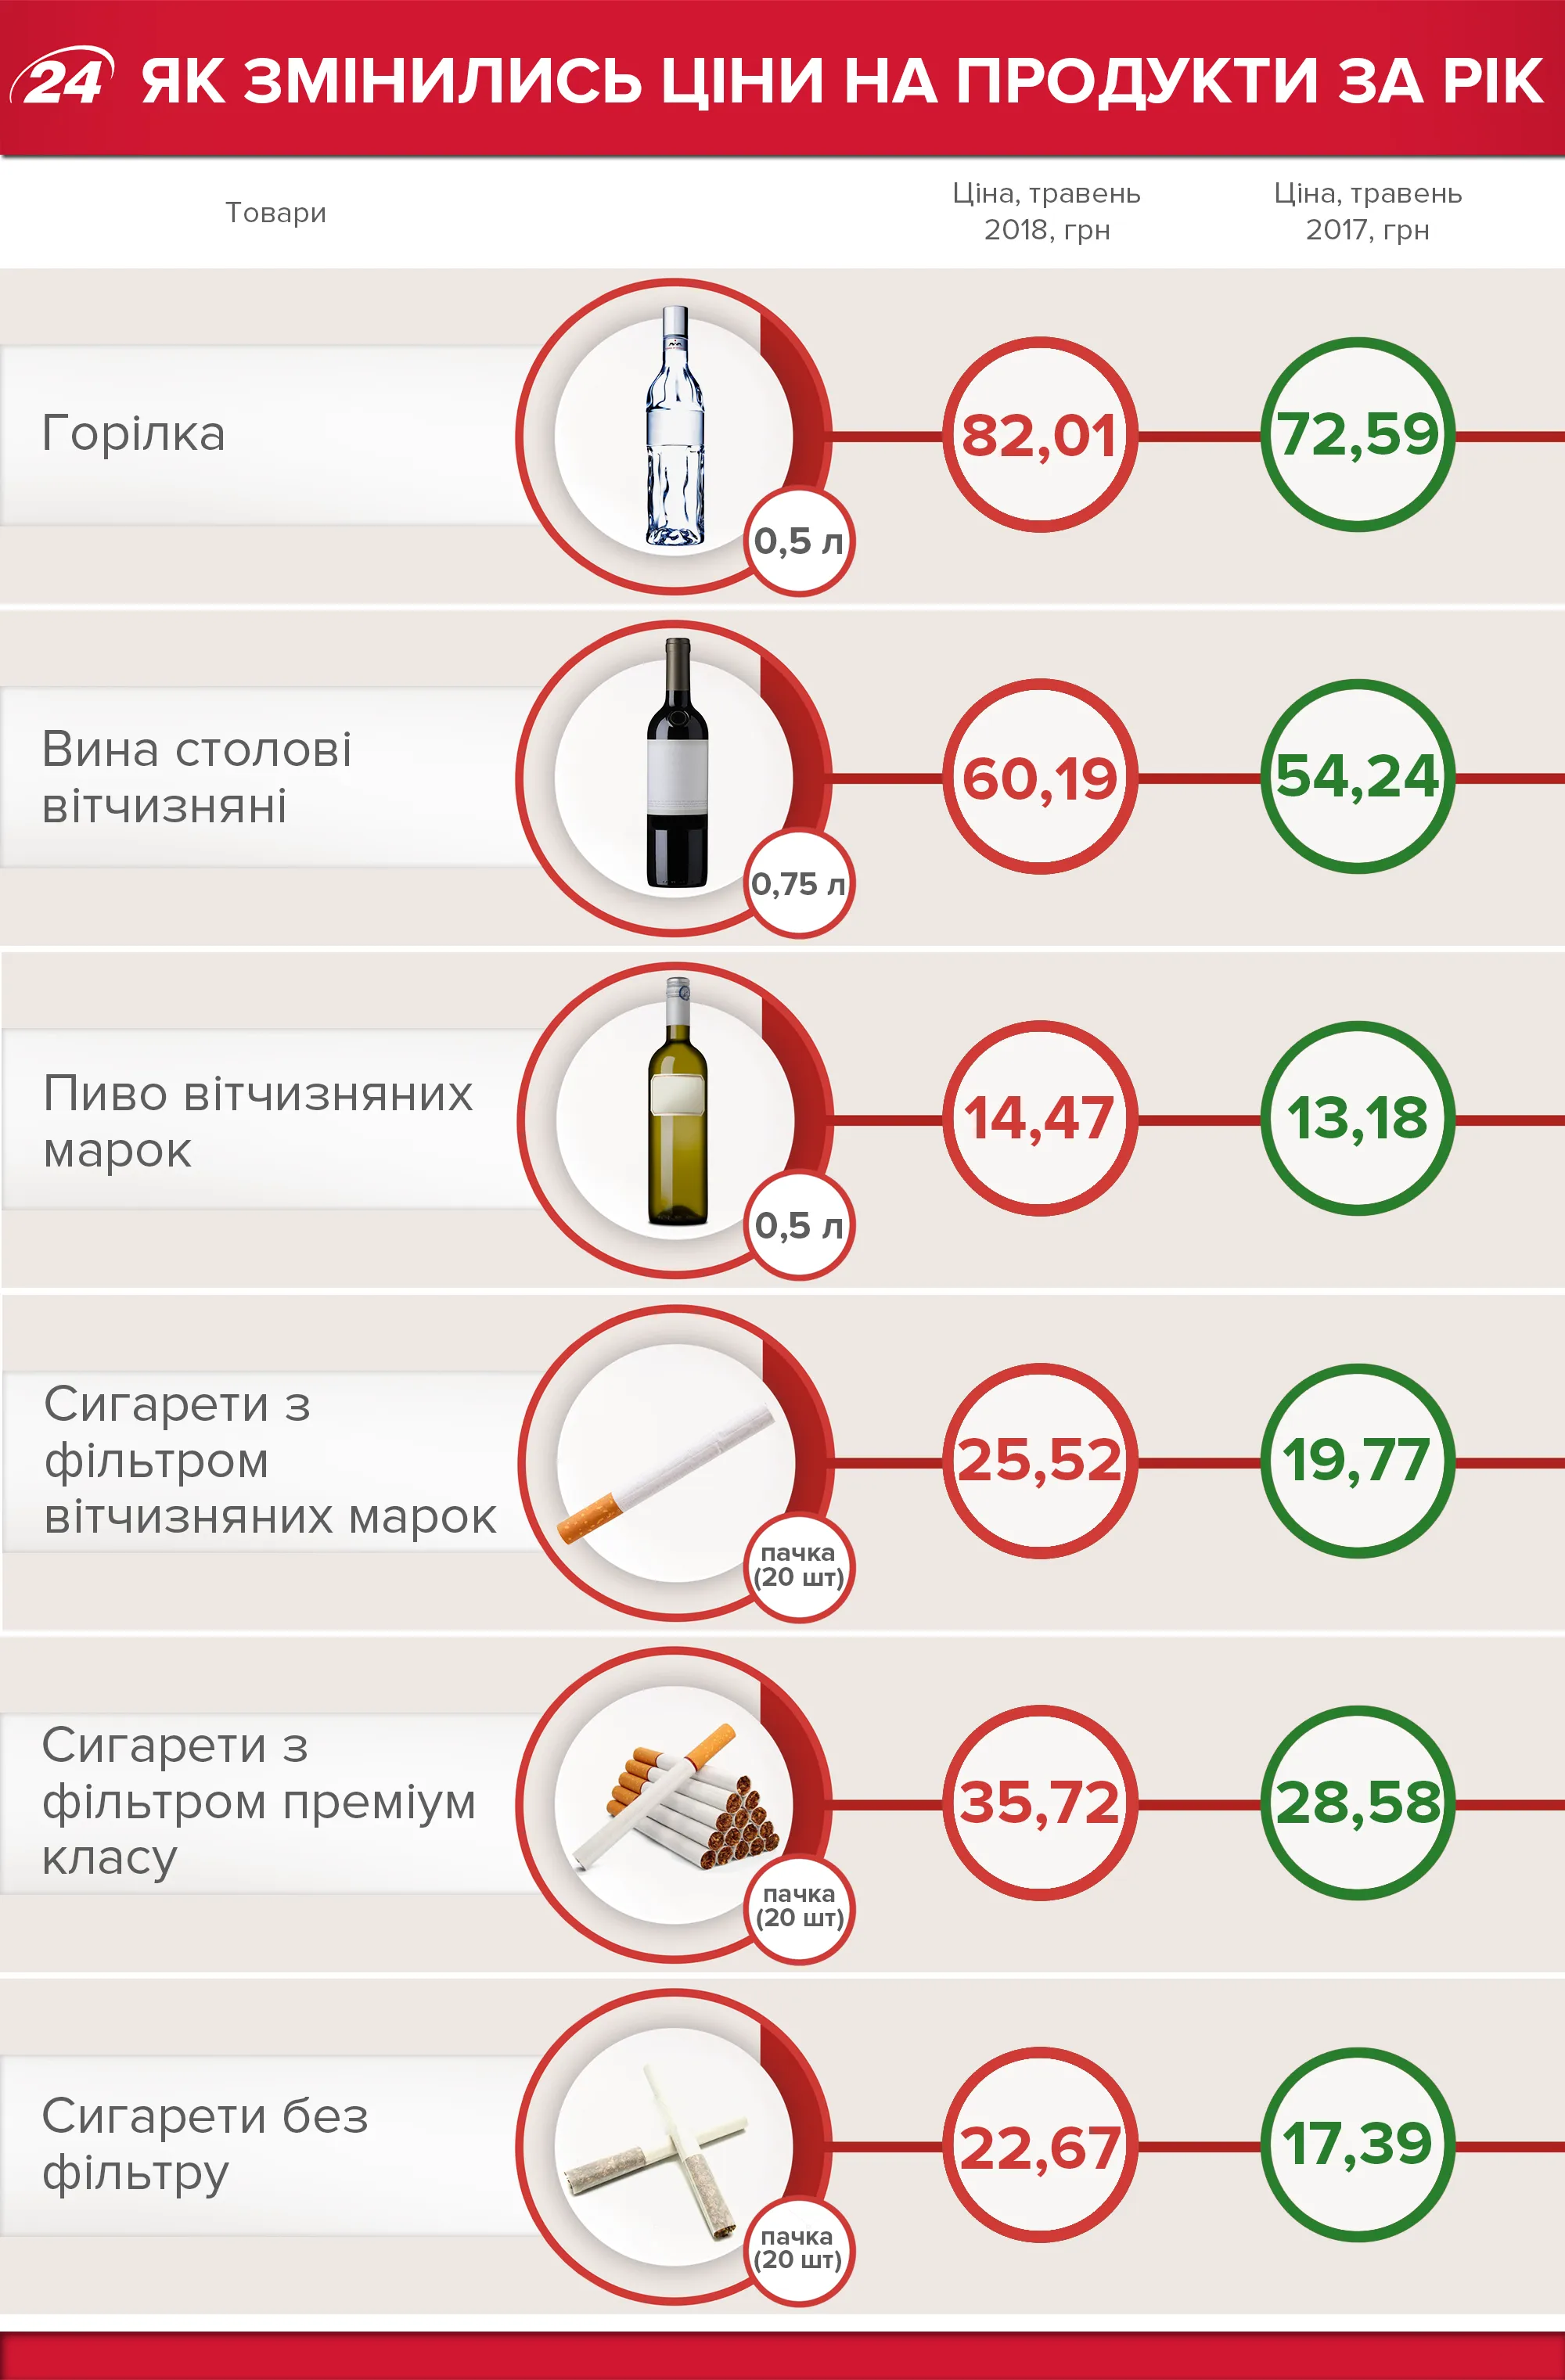 Ціни на продукти в Україні 2018